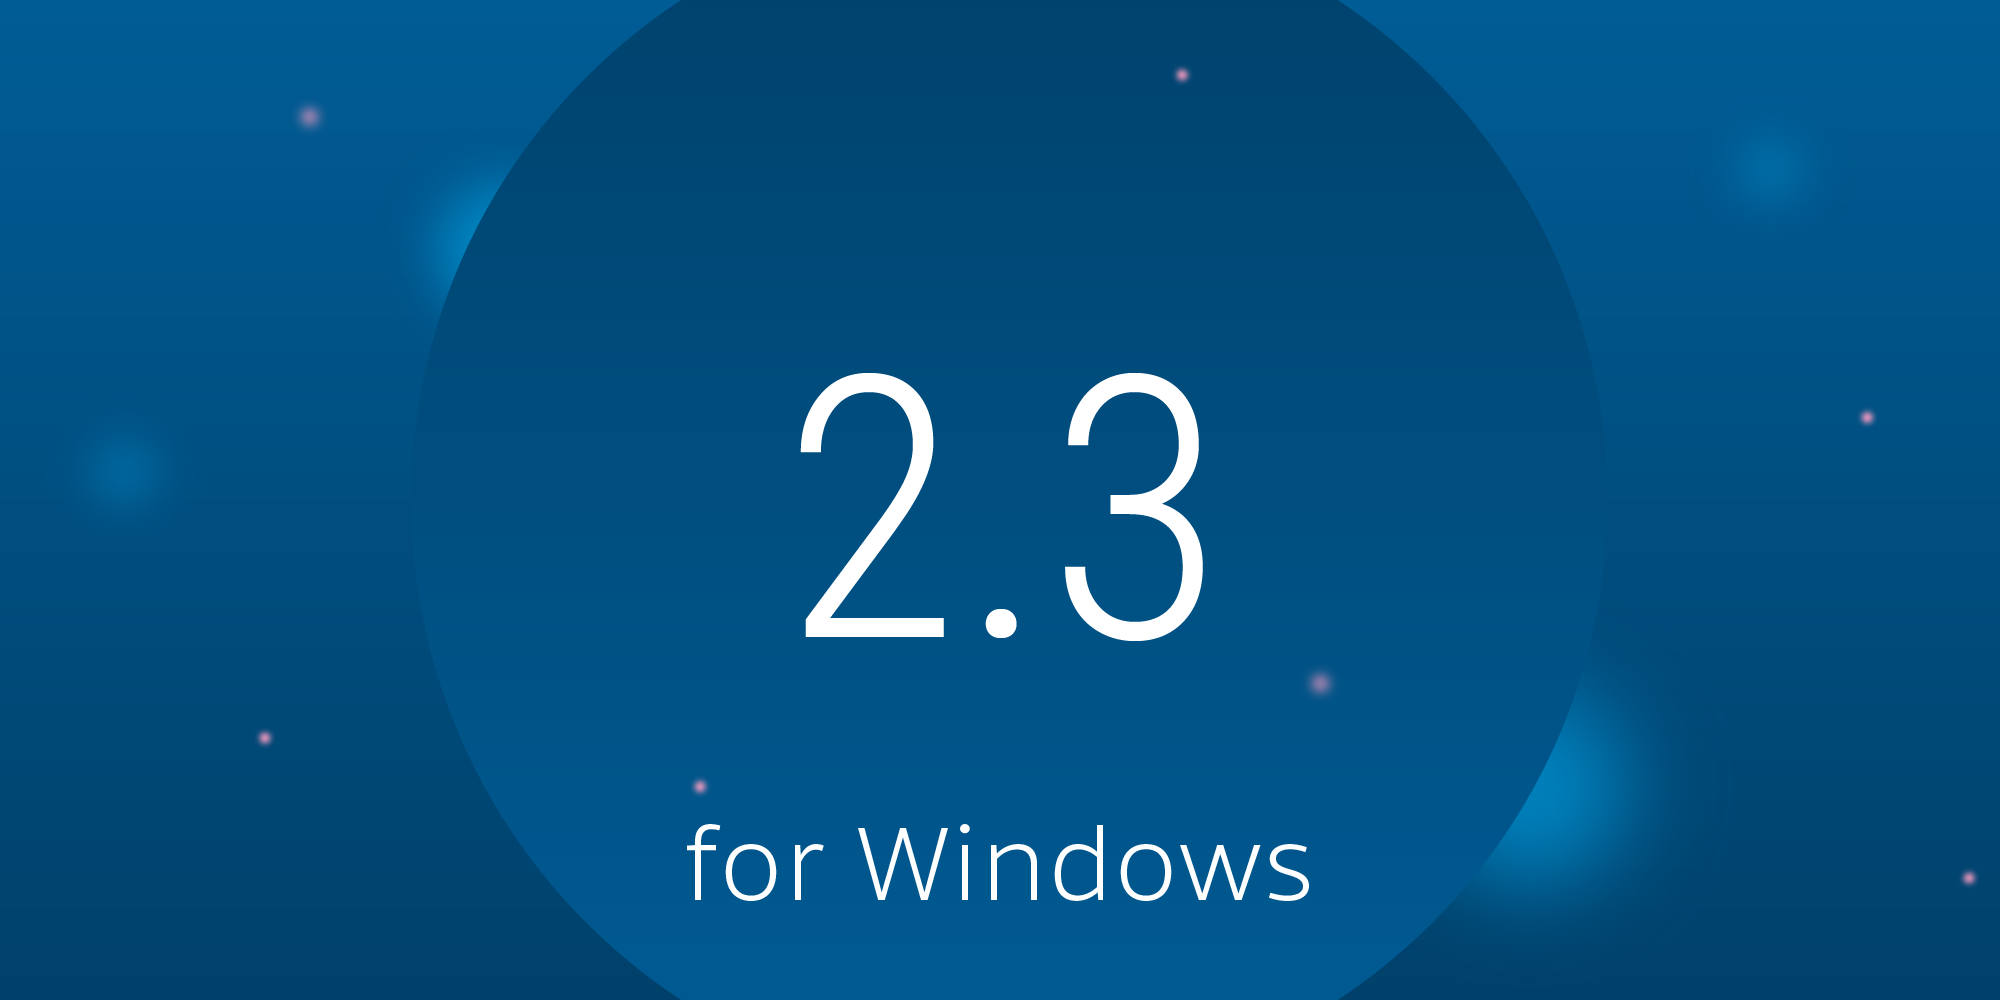 Illustration: PSPDFKit 2.3 for Windows